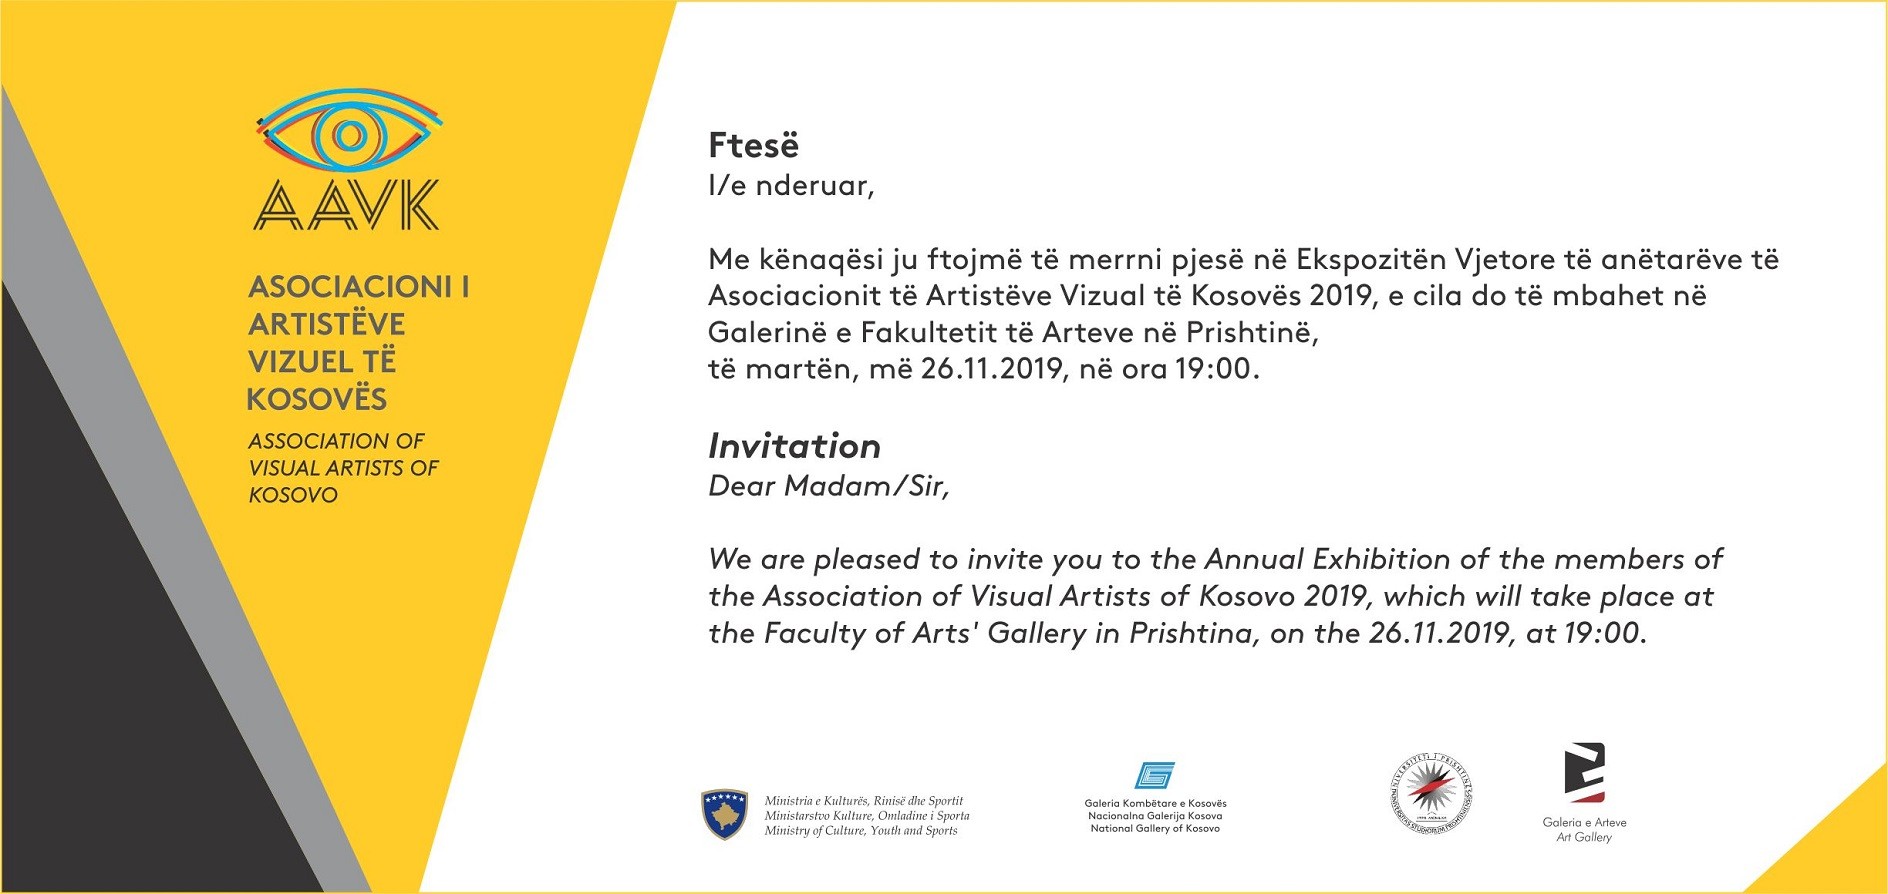 Asociacioni i Artistëve Vizual të Kosovës sjell ekspozitën vjetore 